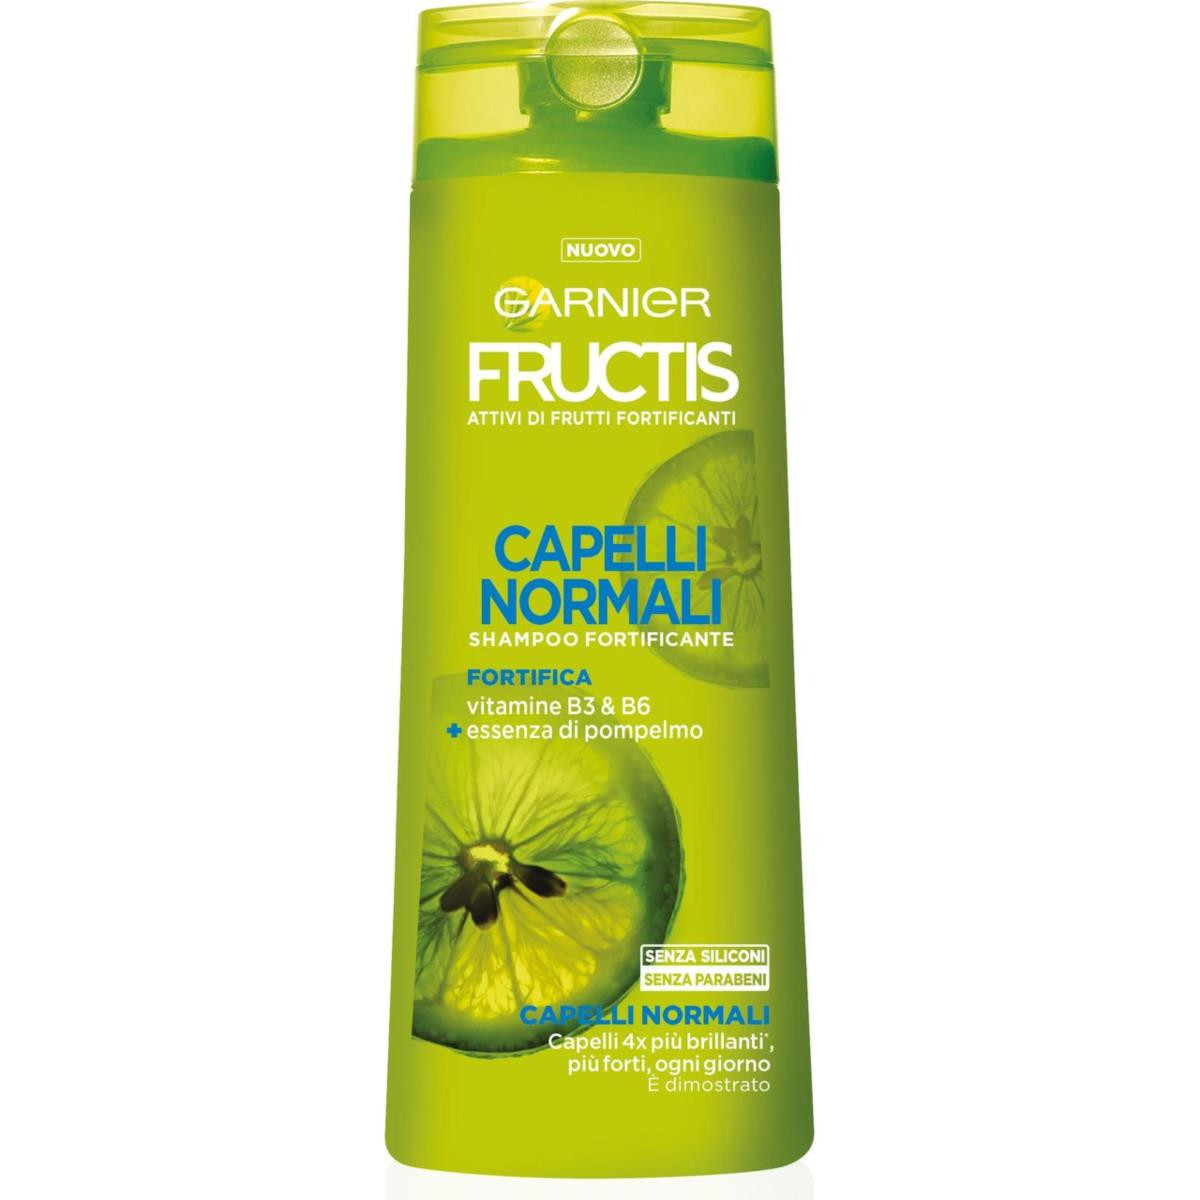 GARNIER Fructis Capelli Normali - Shampoo fortificante per capelli normali - 250 ml